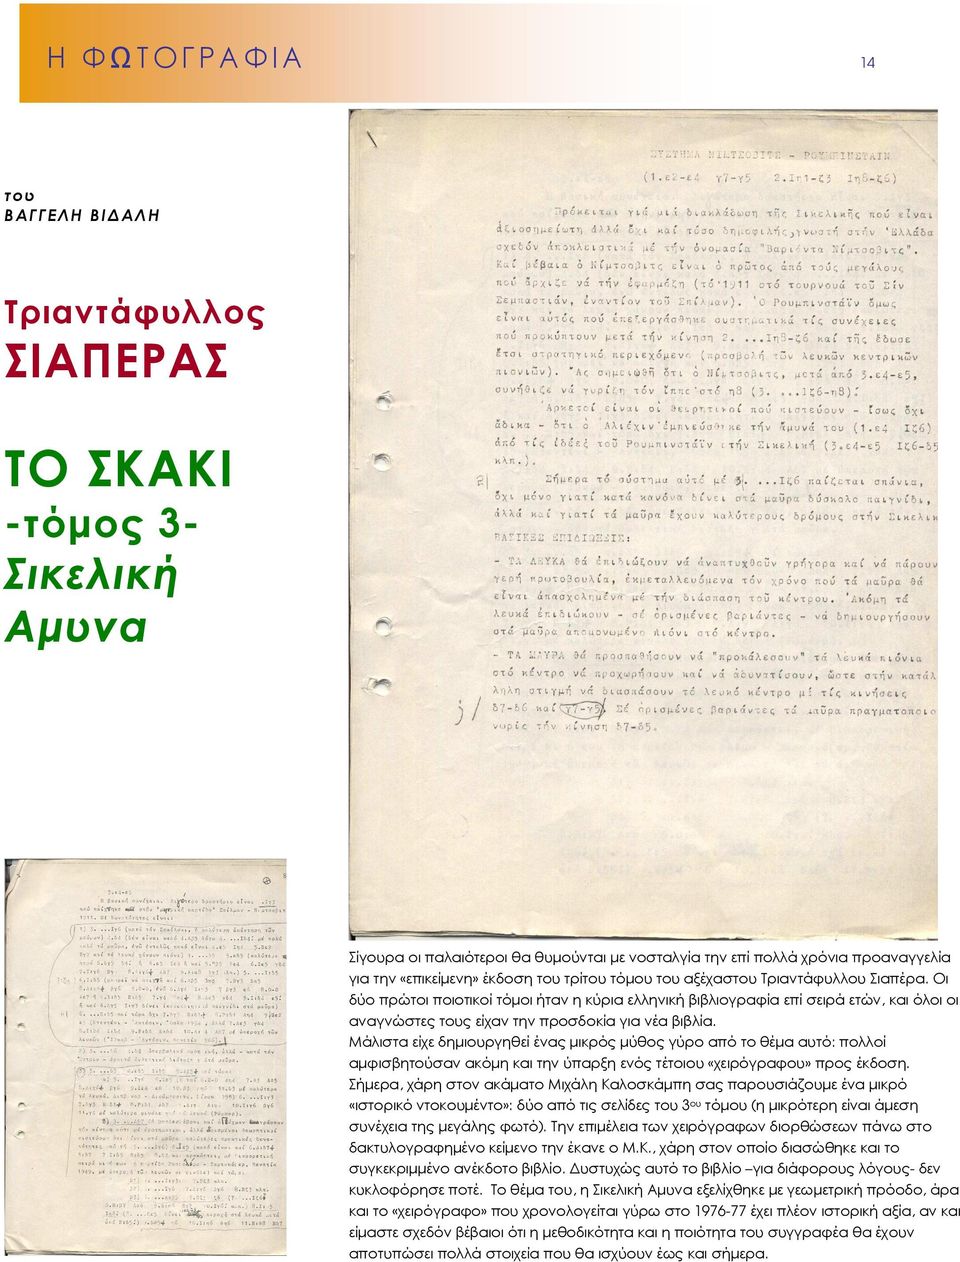 Οι δύο πρώτοι ποιοτικοί τόµοι ήταν η κύρια ελληνική βιβλιογραφία επί σειρά ετών, και όλοι οι αναγνώστες τους είχαν την προσδοκία για νέα βιβλία.